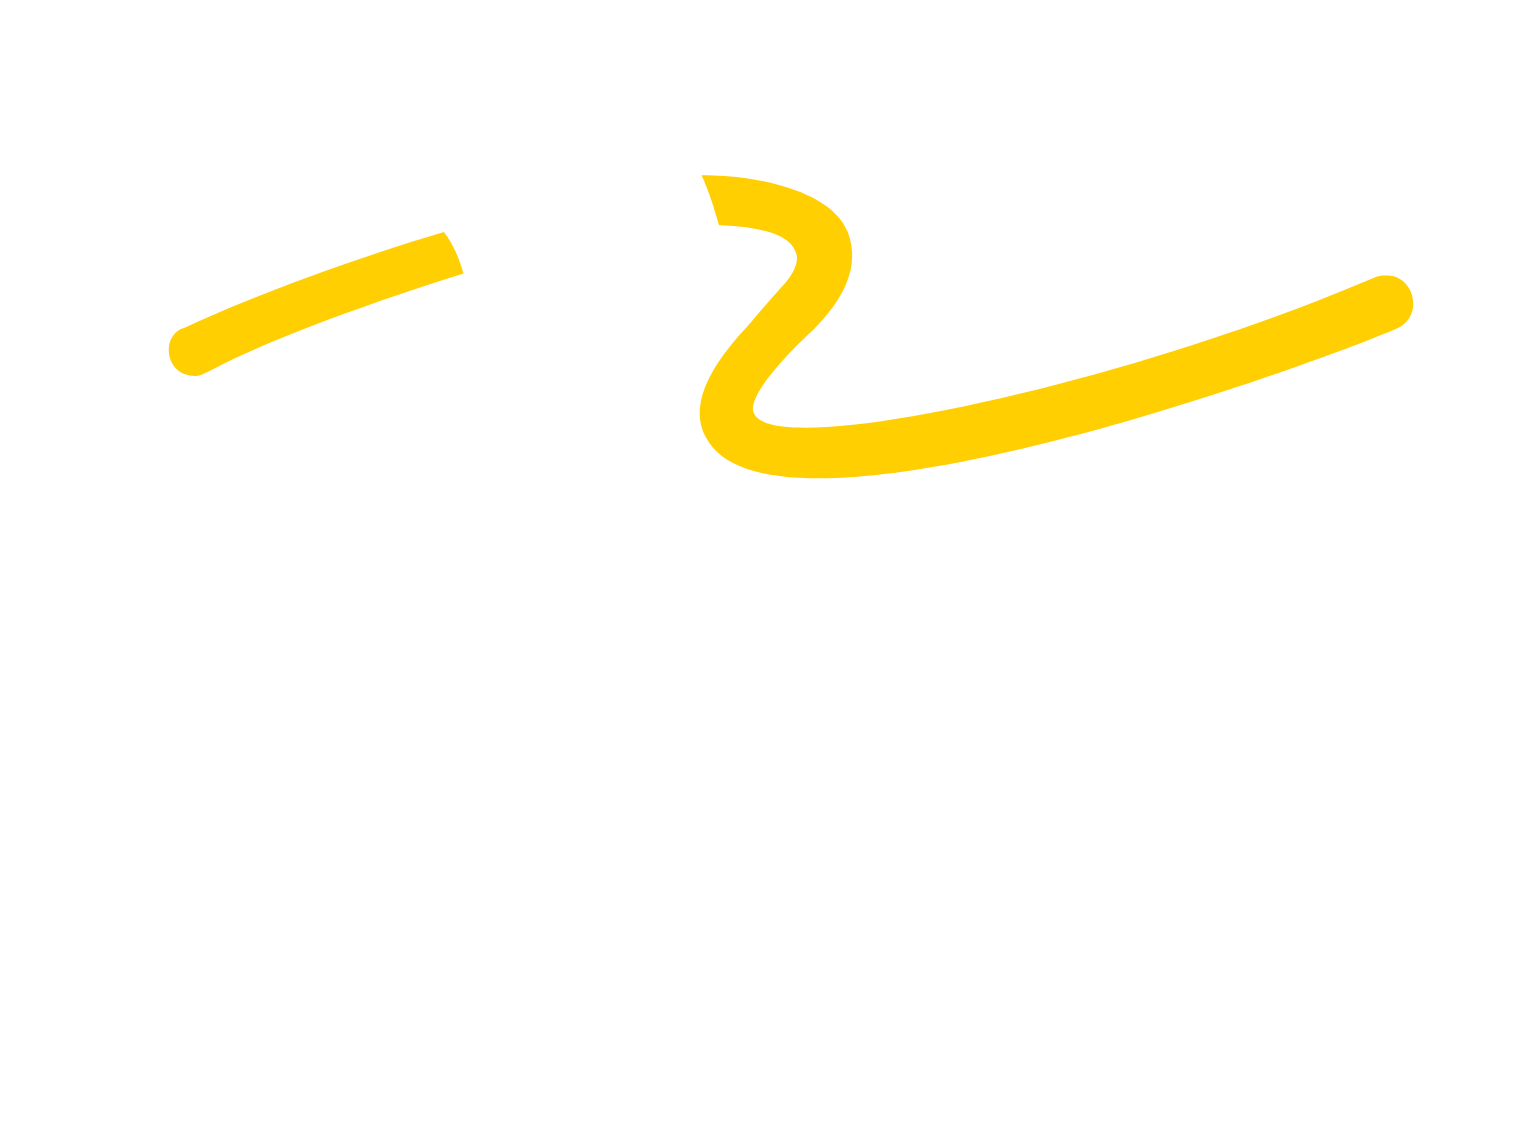 Valero Energy logo large for dark backgrounds (transparent PNG)